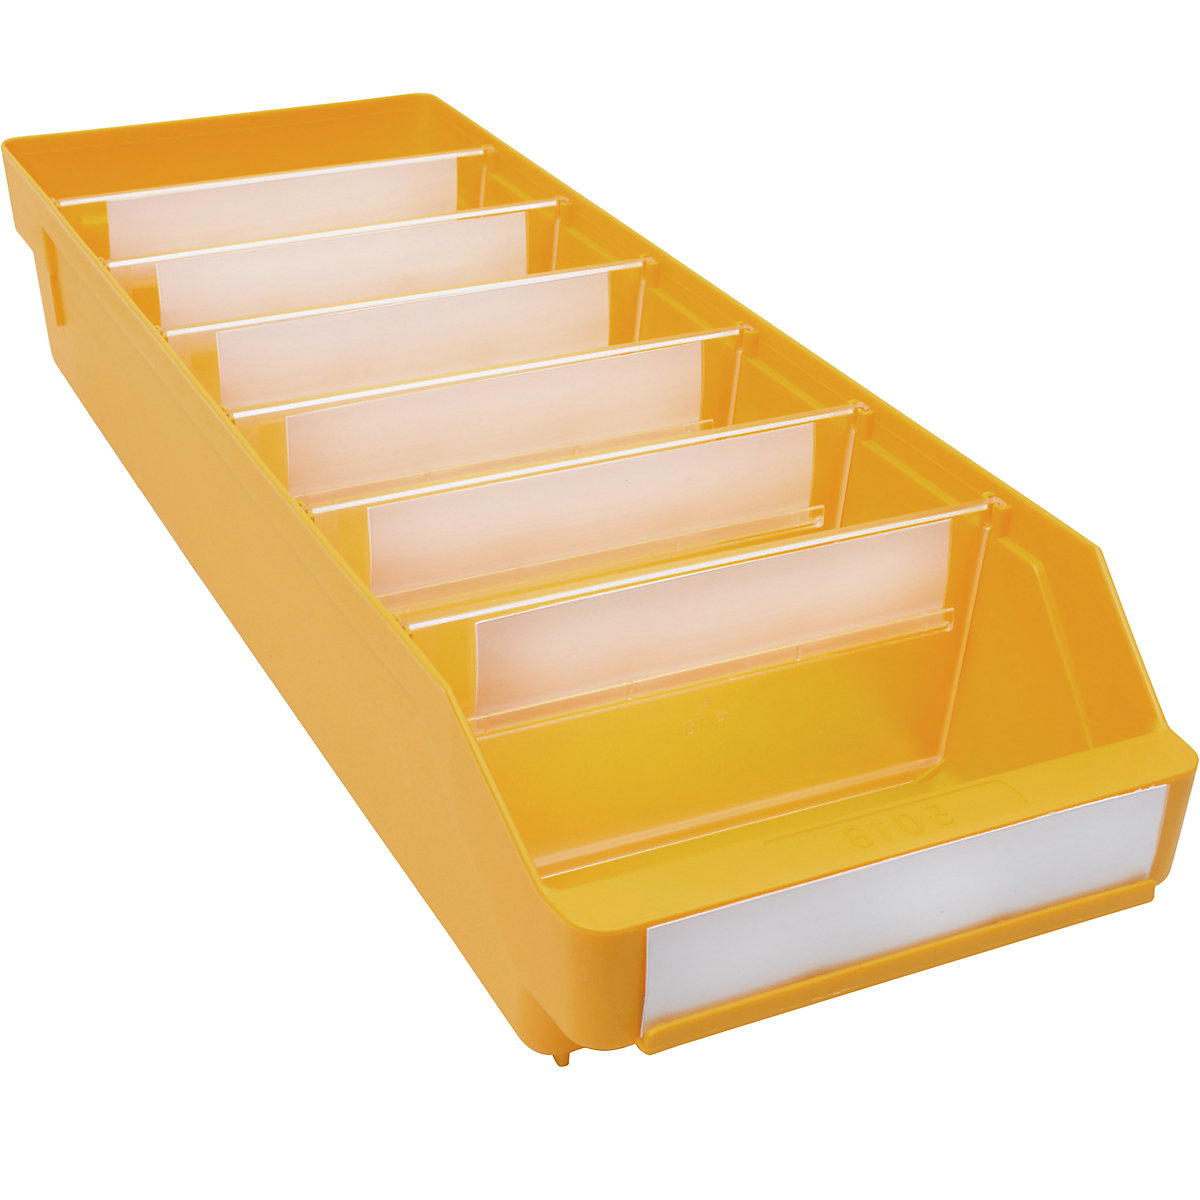 Regalkasten aus hochschlagfestem Polypropylen STEMO, gelb, LxBxH 500 x 180 x 95 mm, VE 20 Stk-4